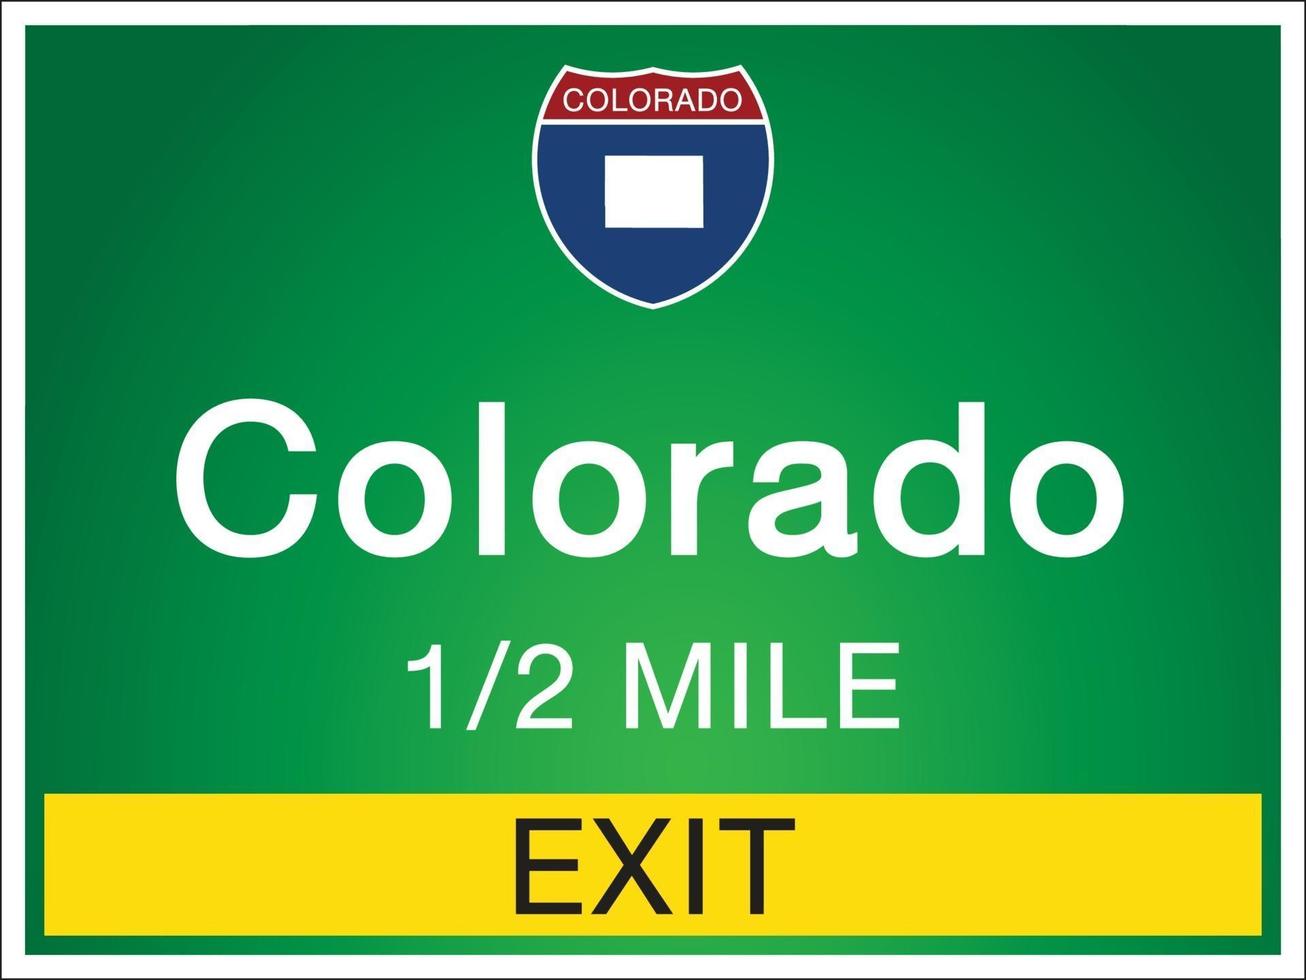 Autobahnschilder vor der Ausfahrt zu Colorado State Informationen und Karten vektor